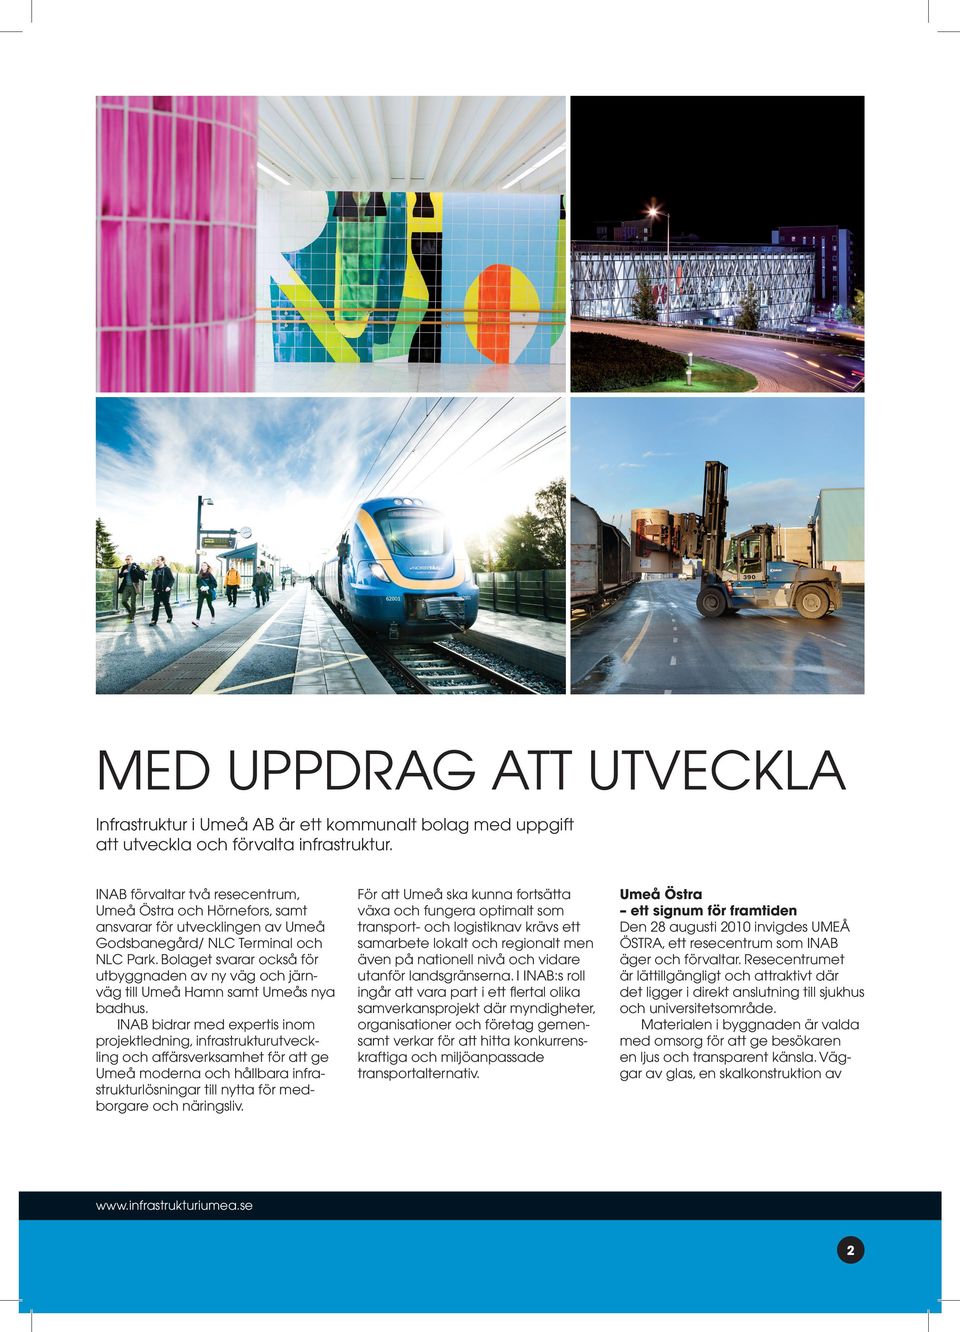 Bolaget svarar också för utbyggnaden av ny väg och järnväg till Umeå Hamn samt Umeås nya badhus.